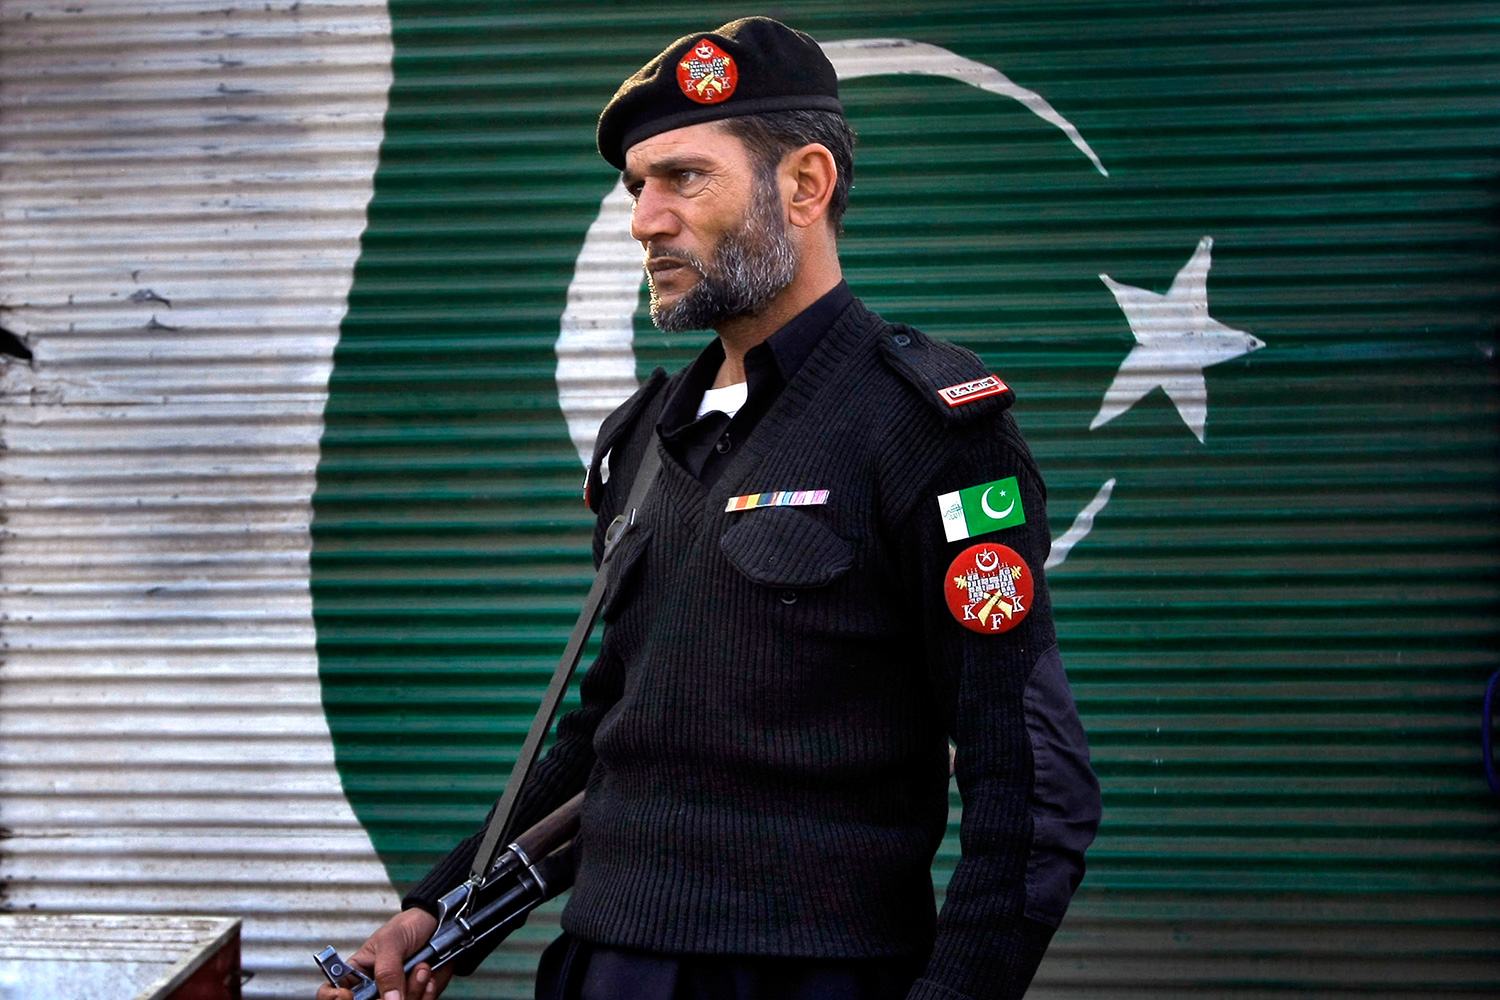 La policía de Pakistán es acusada de asesinar ilegalmente a 2000 sospechosos al año